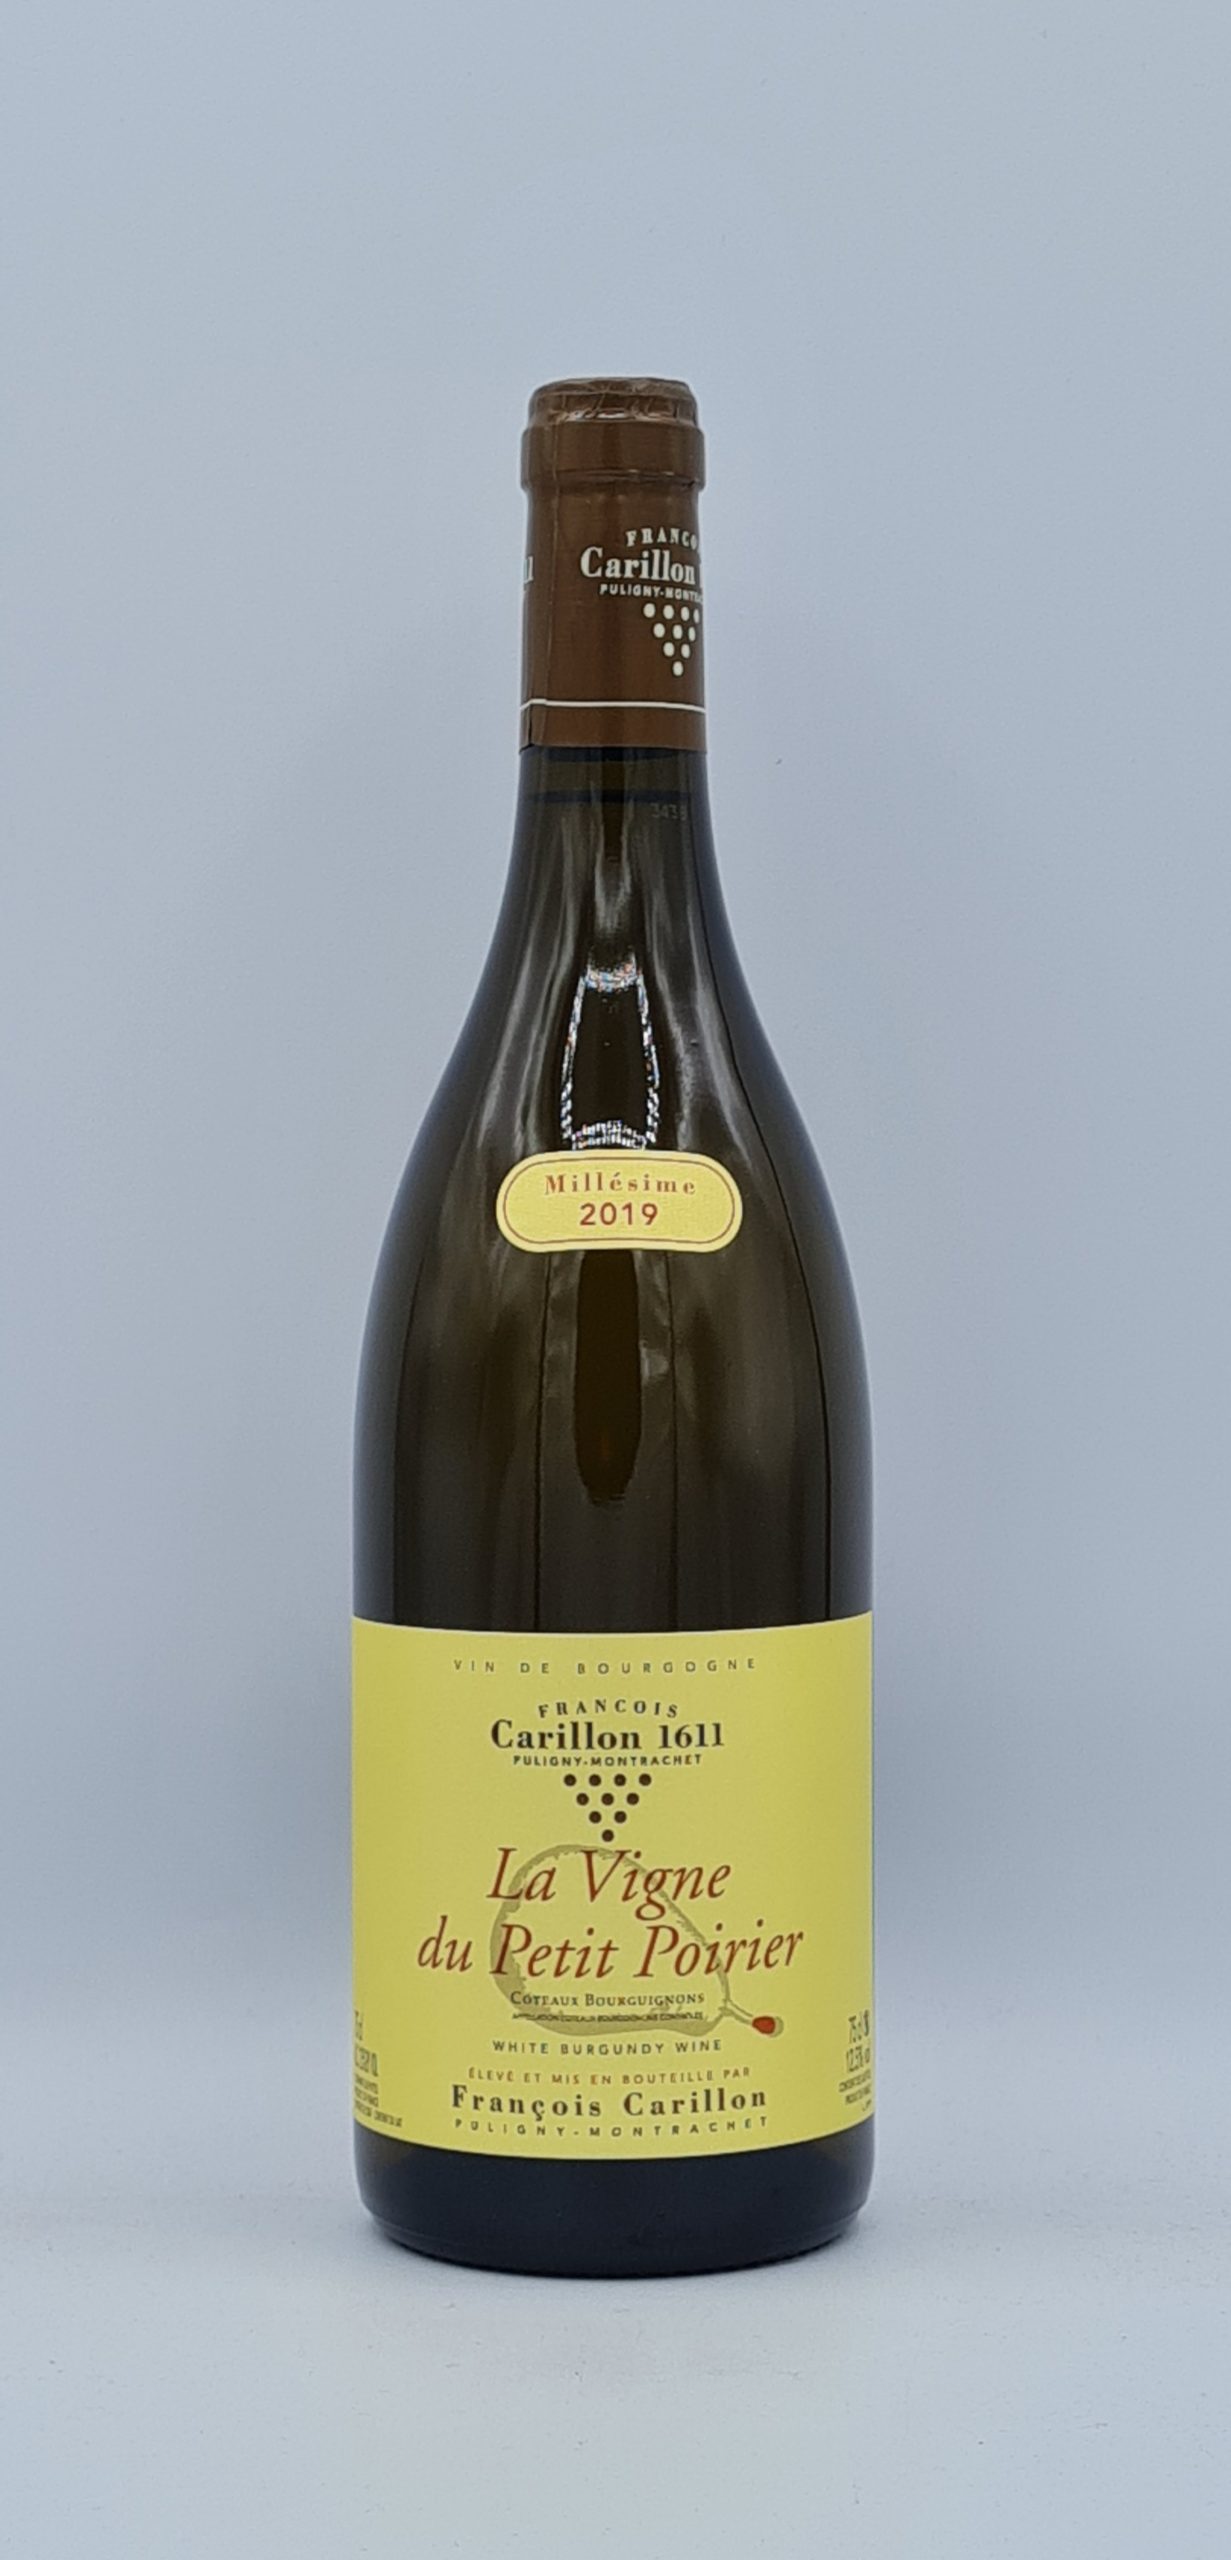 Côteaux Bourguignon aligoté “La vigne du petit Poirier” 2019 Domaine Carillon